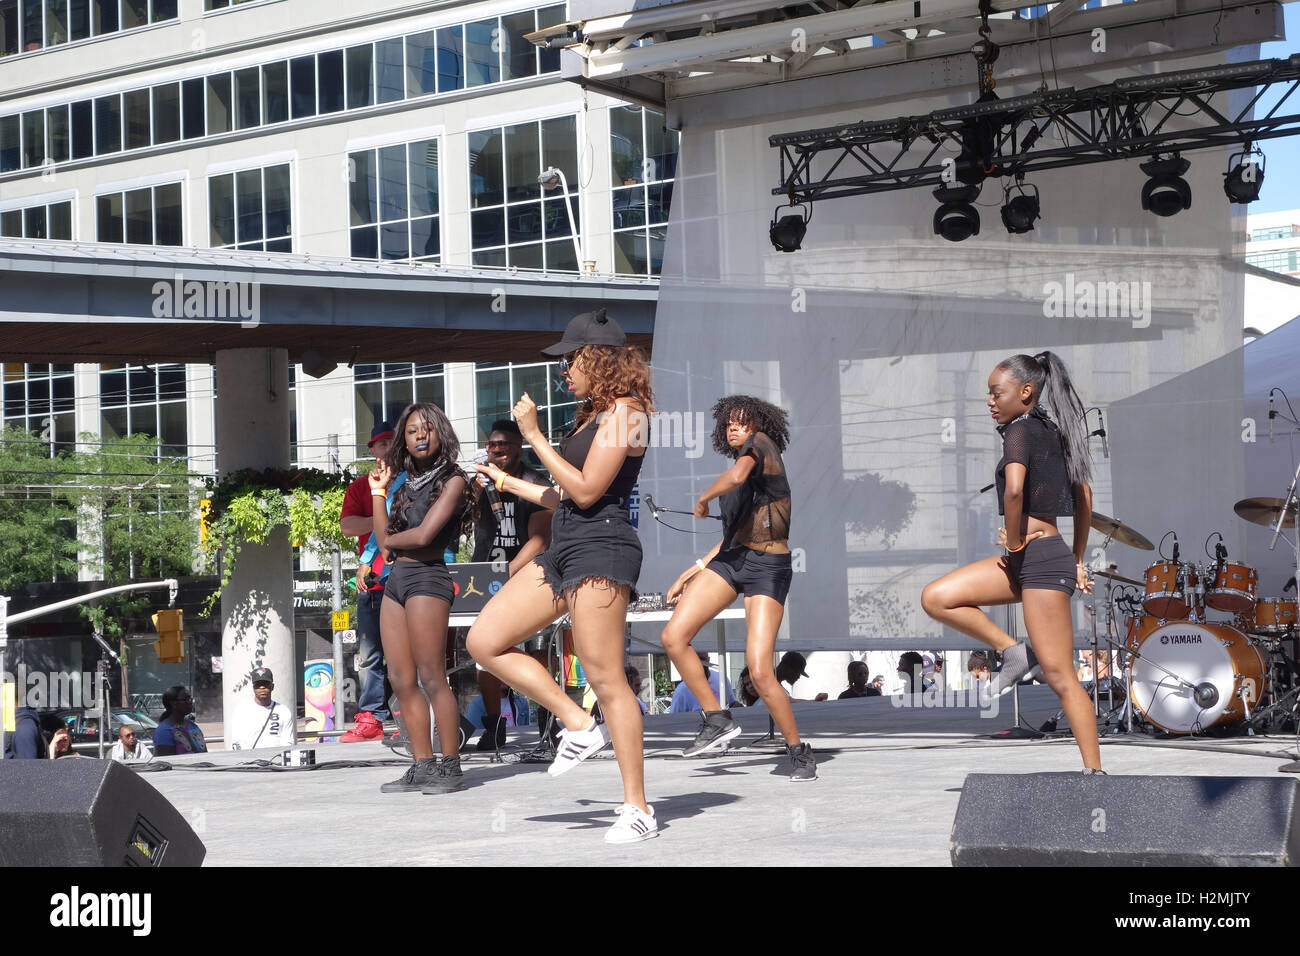 black women dancing stage outdoor Stock Photo